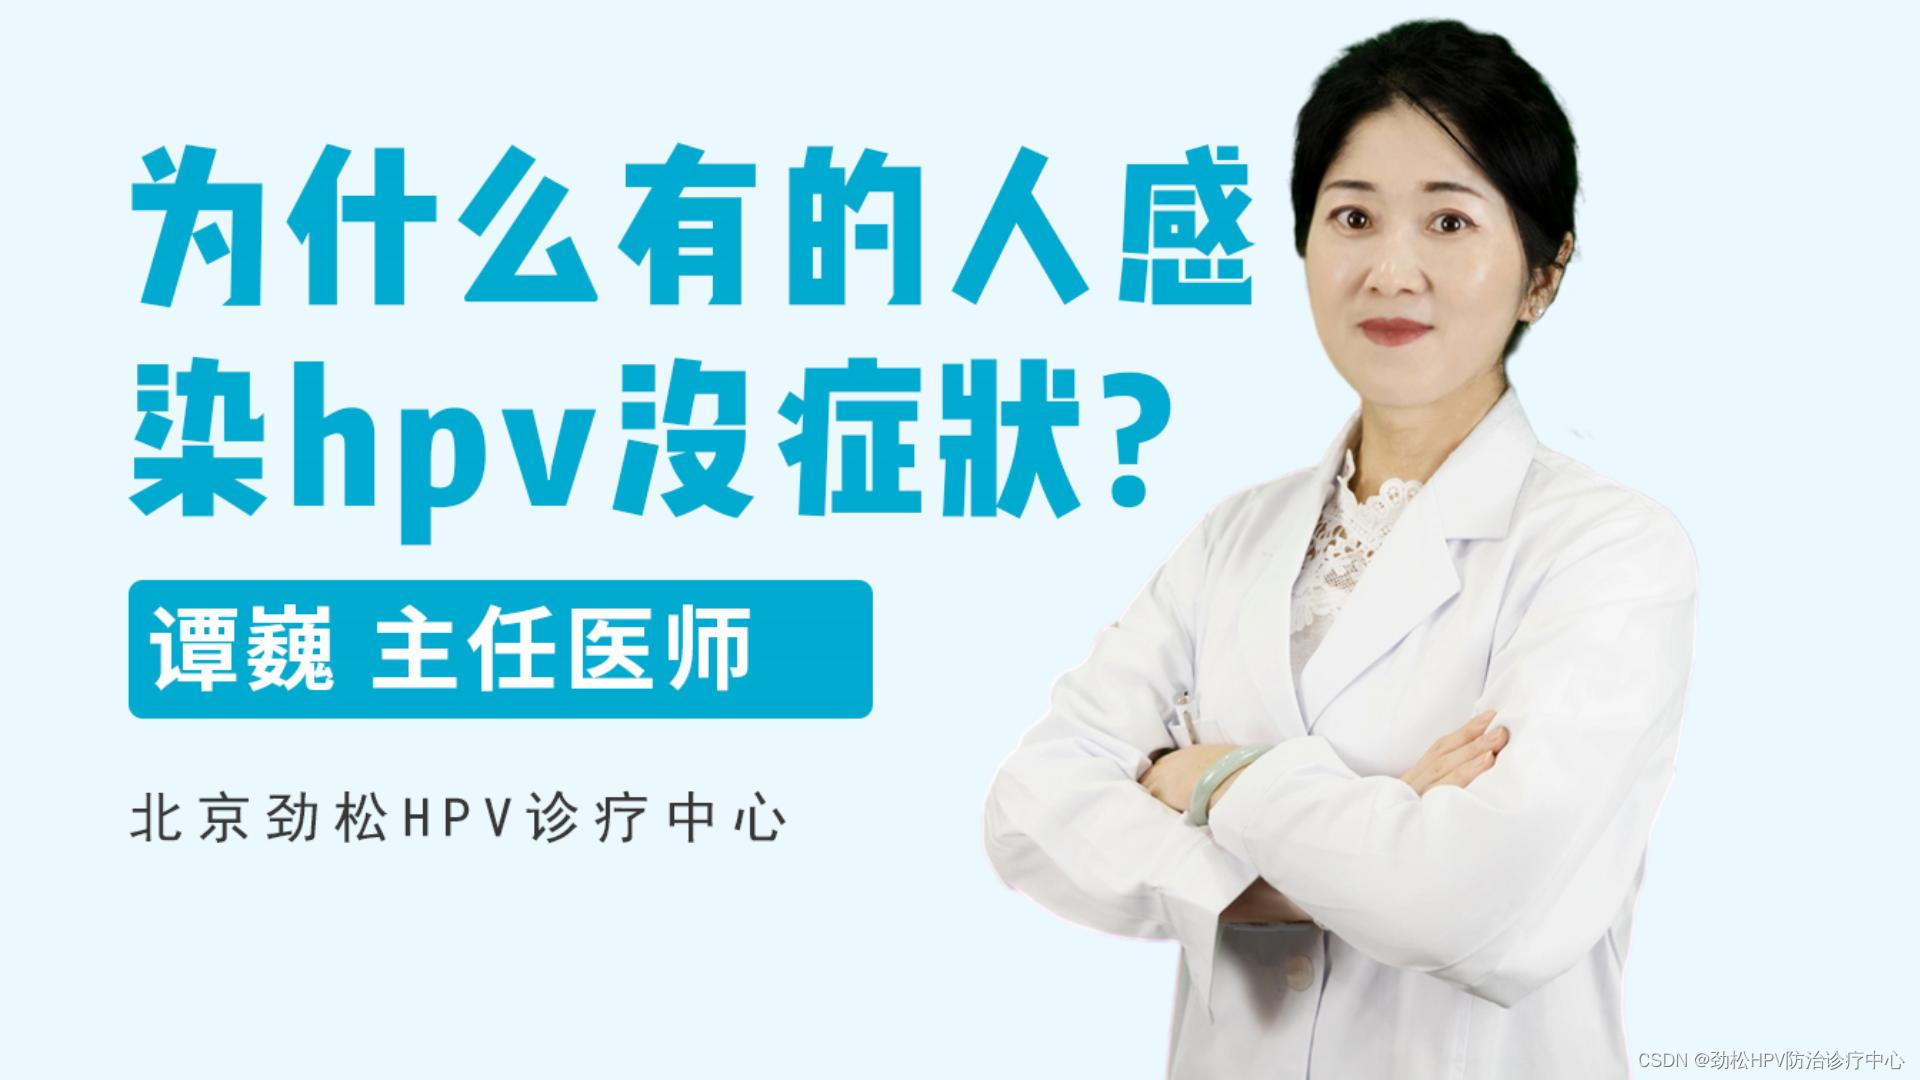 HPV为什么无症状？皮肤性病科专家谭巍解读具体原因